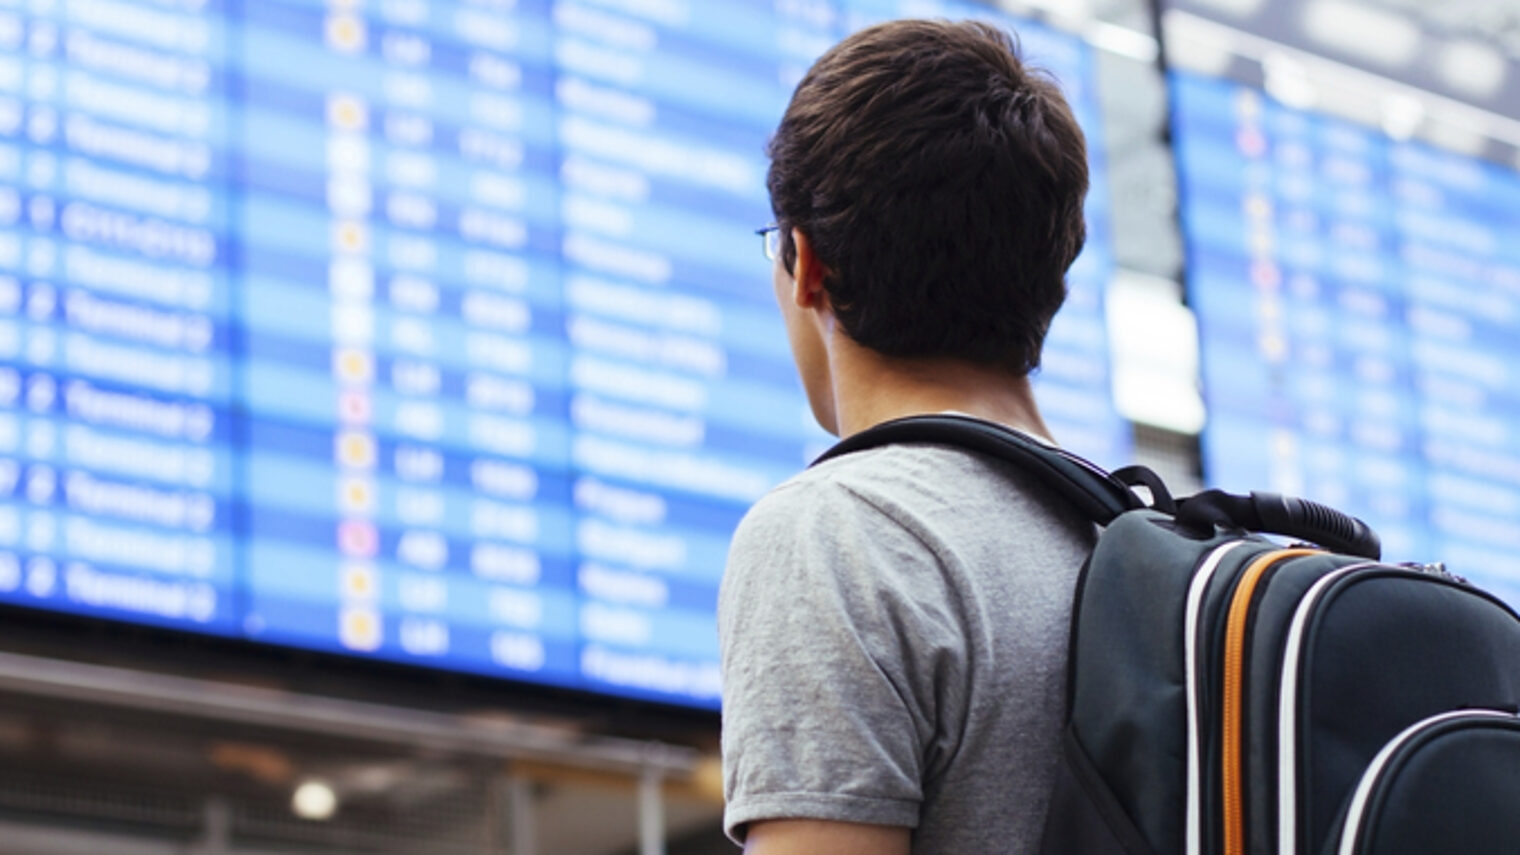 Eine Person mit einem Rucksack ist von hinten zu sehen, im Hintergrund eine Anzeigentafel wie an Bahnhöfen oder Flughäfen.